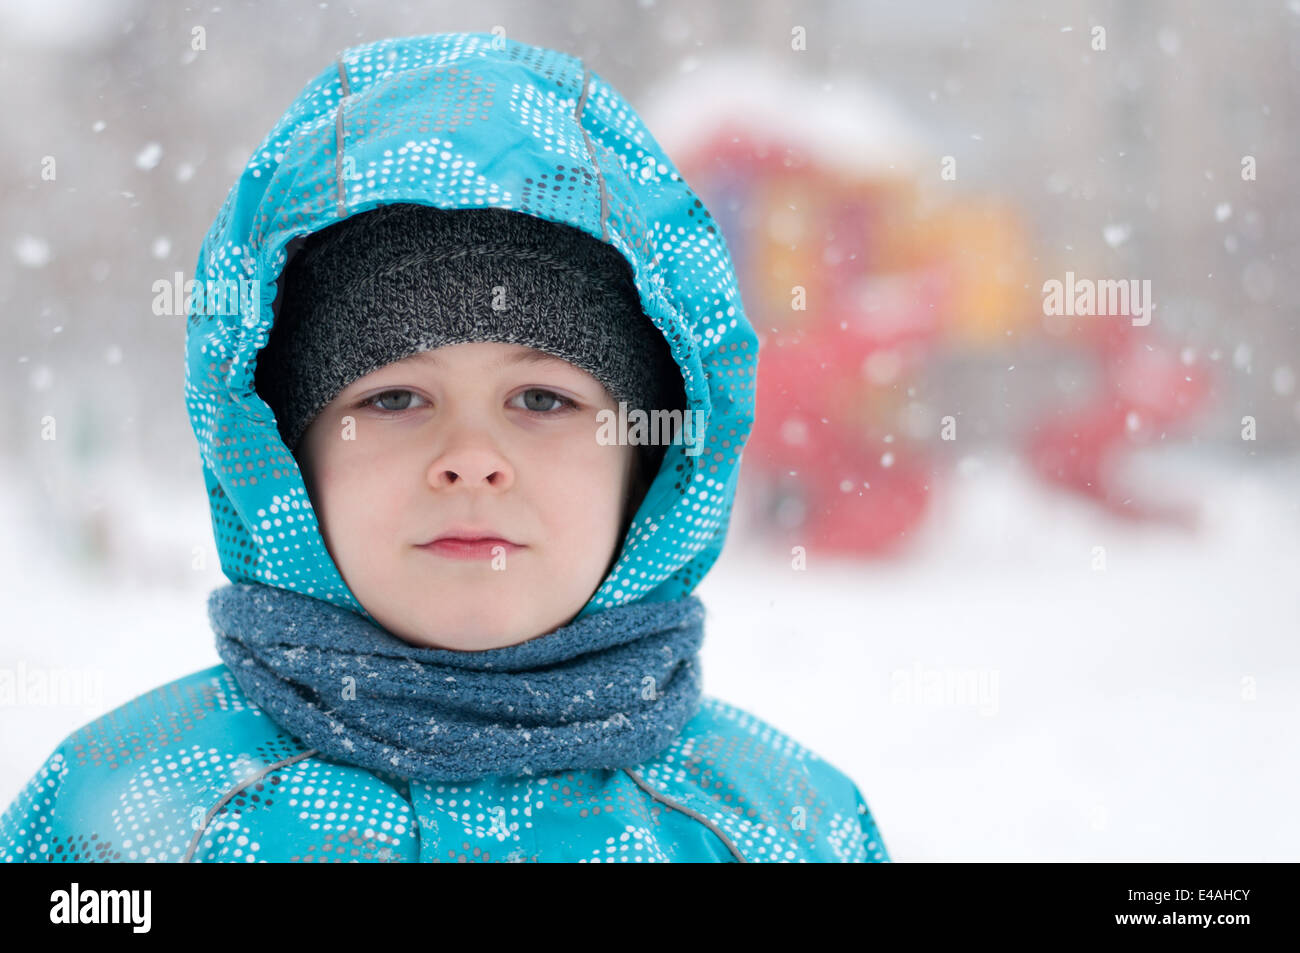 Garçon enfant portrait un huit ans des vêtements d'hiver neige blizzard  frost Down jacket hood écharpe bleu froid jour semble tout droit Pas de la  Russie Photo Stock - Alamy